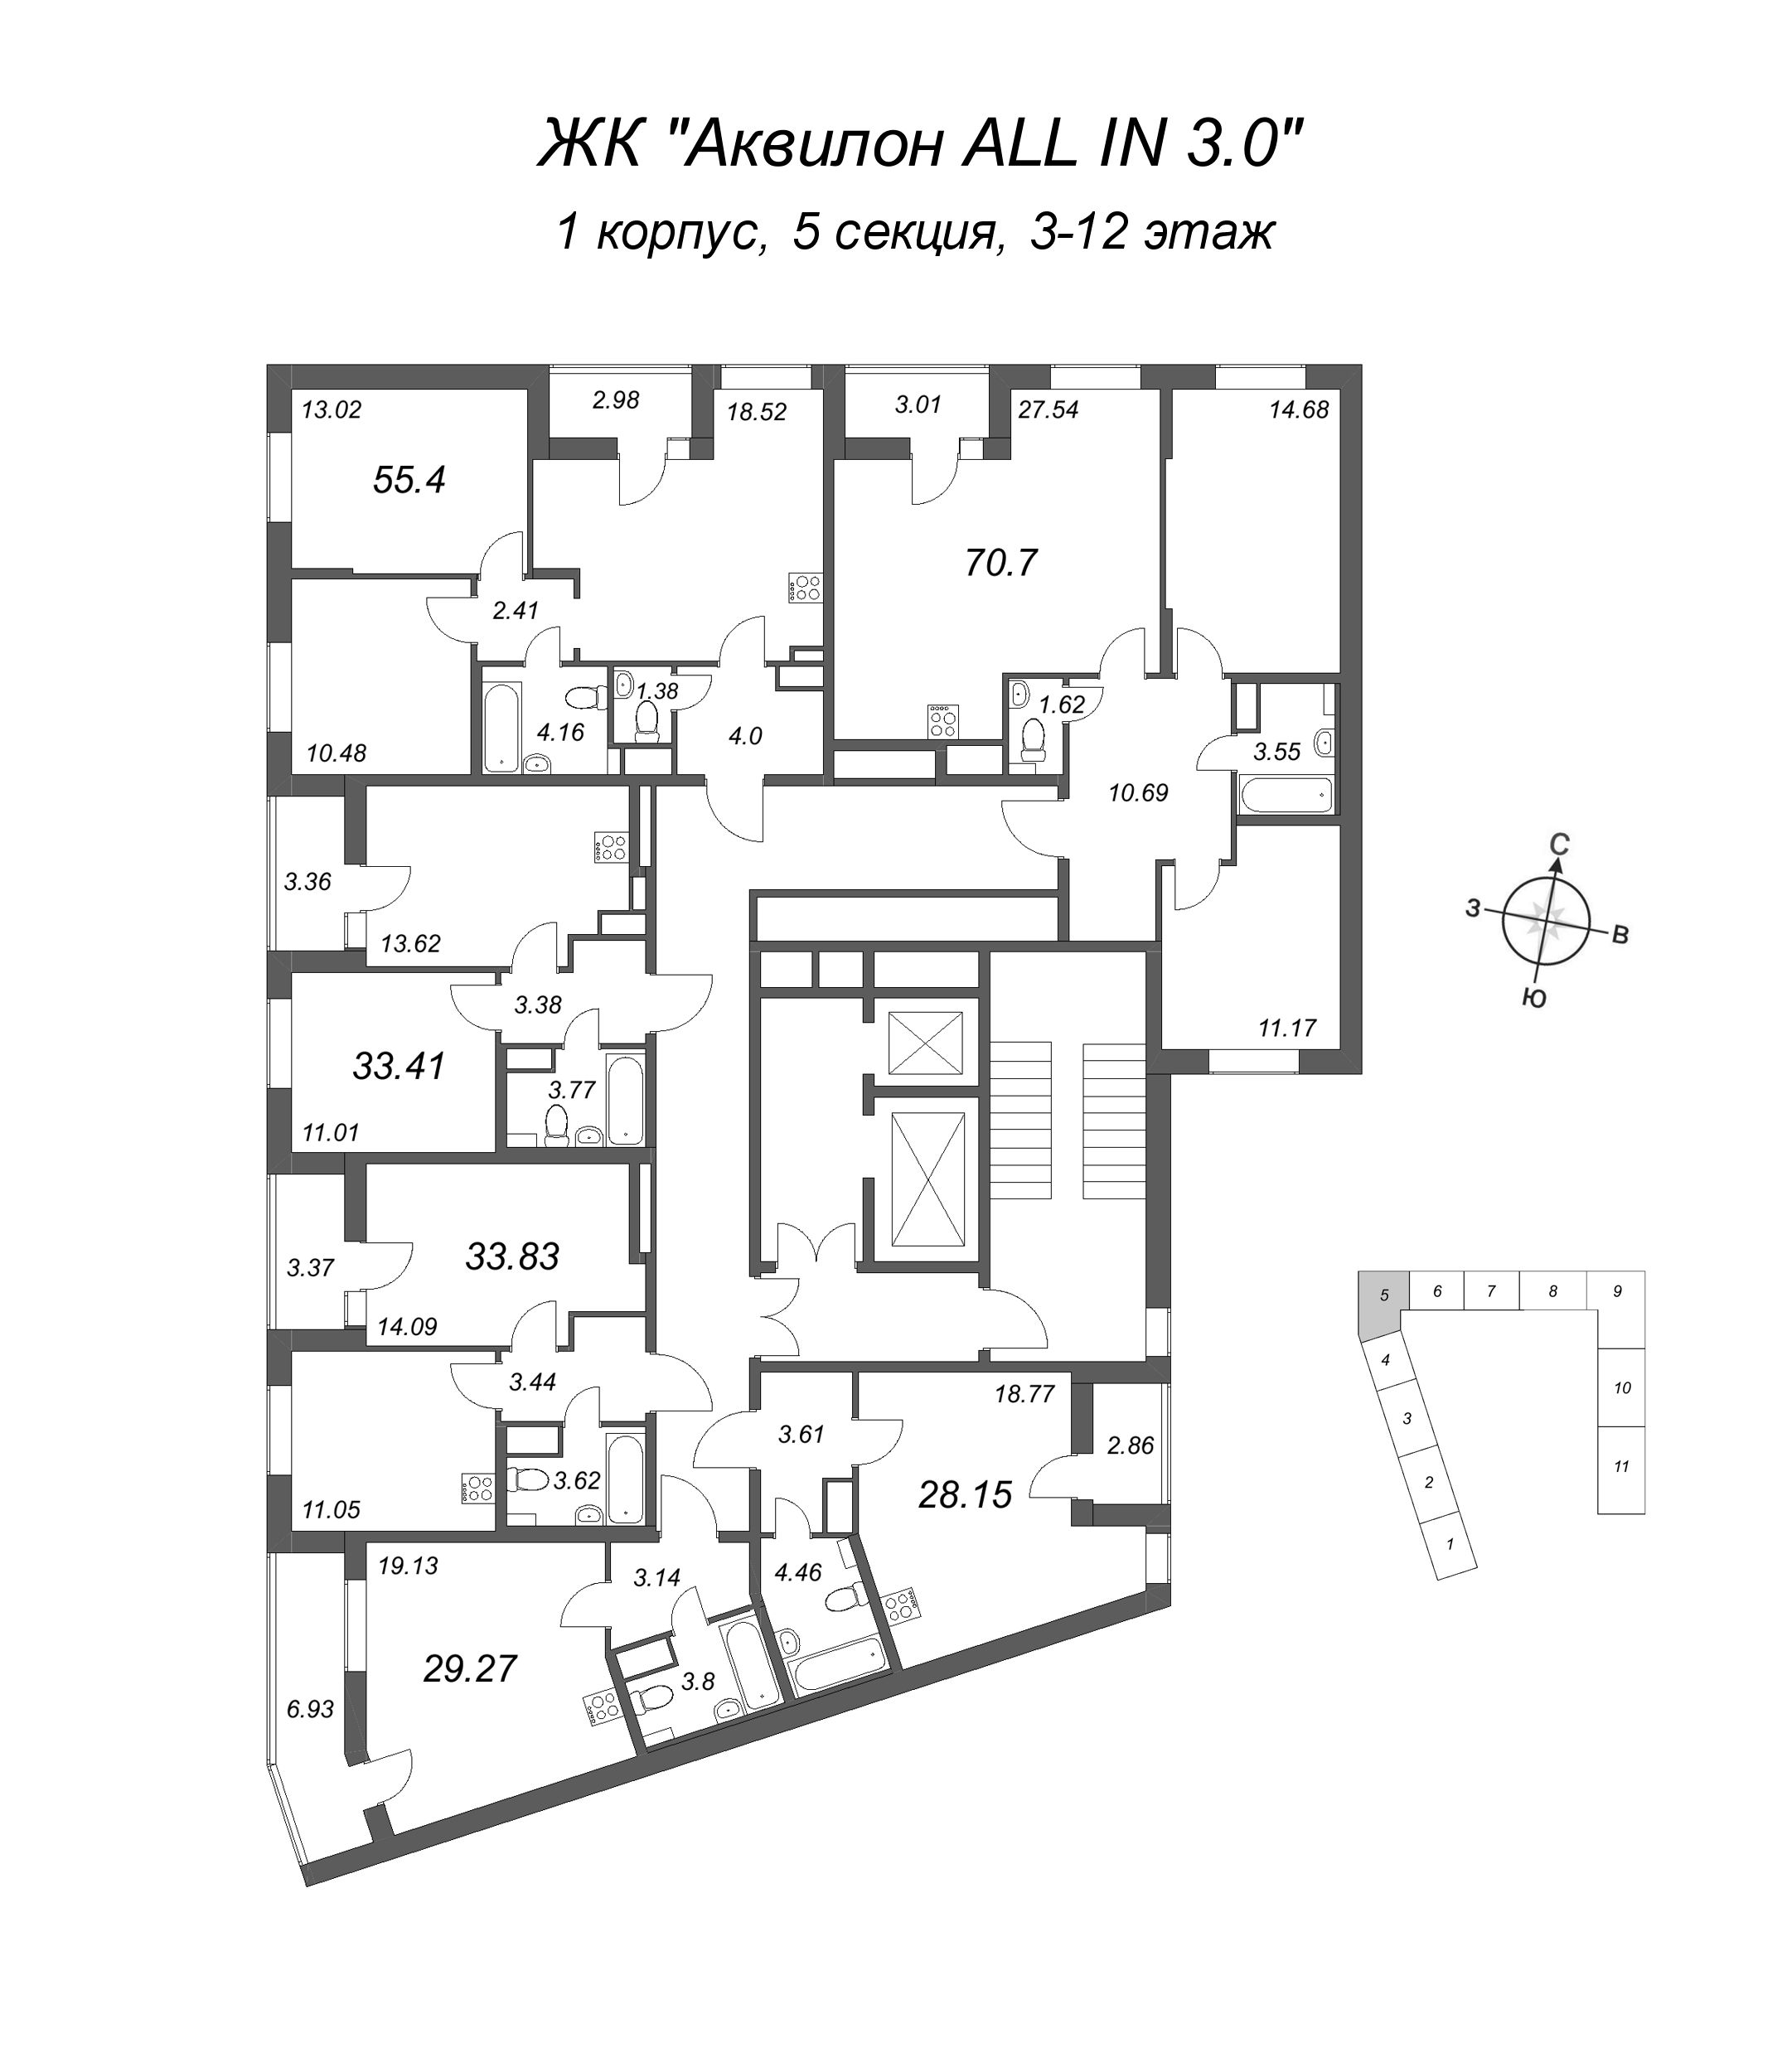 1-комнатная квартира, 33.83 м² в ЖК "Аквилон All in 3.0" - планировка этажа